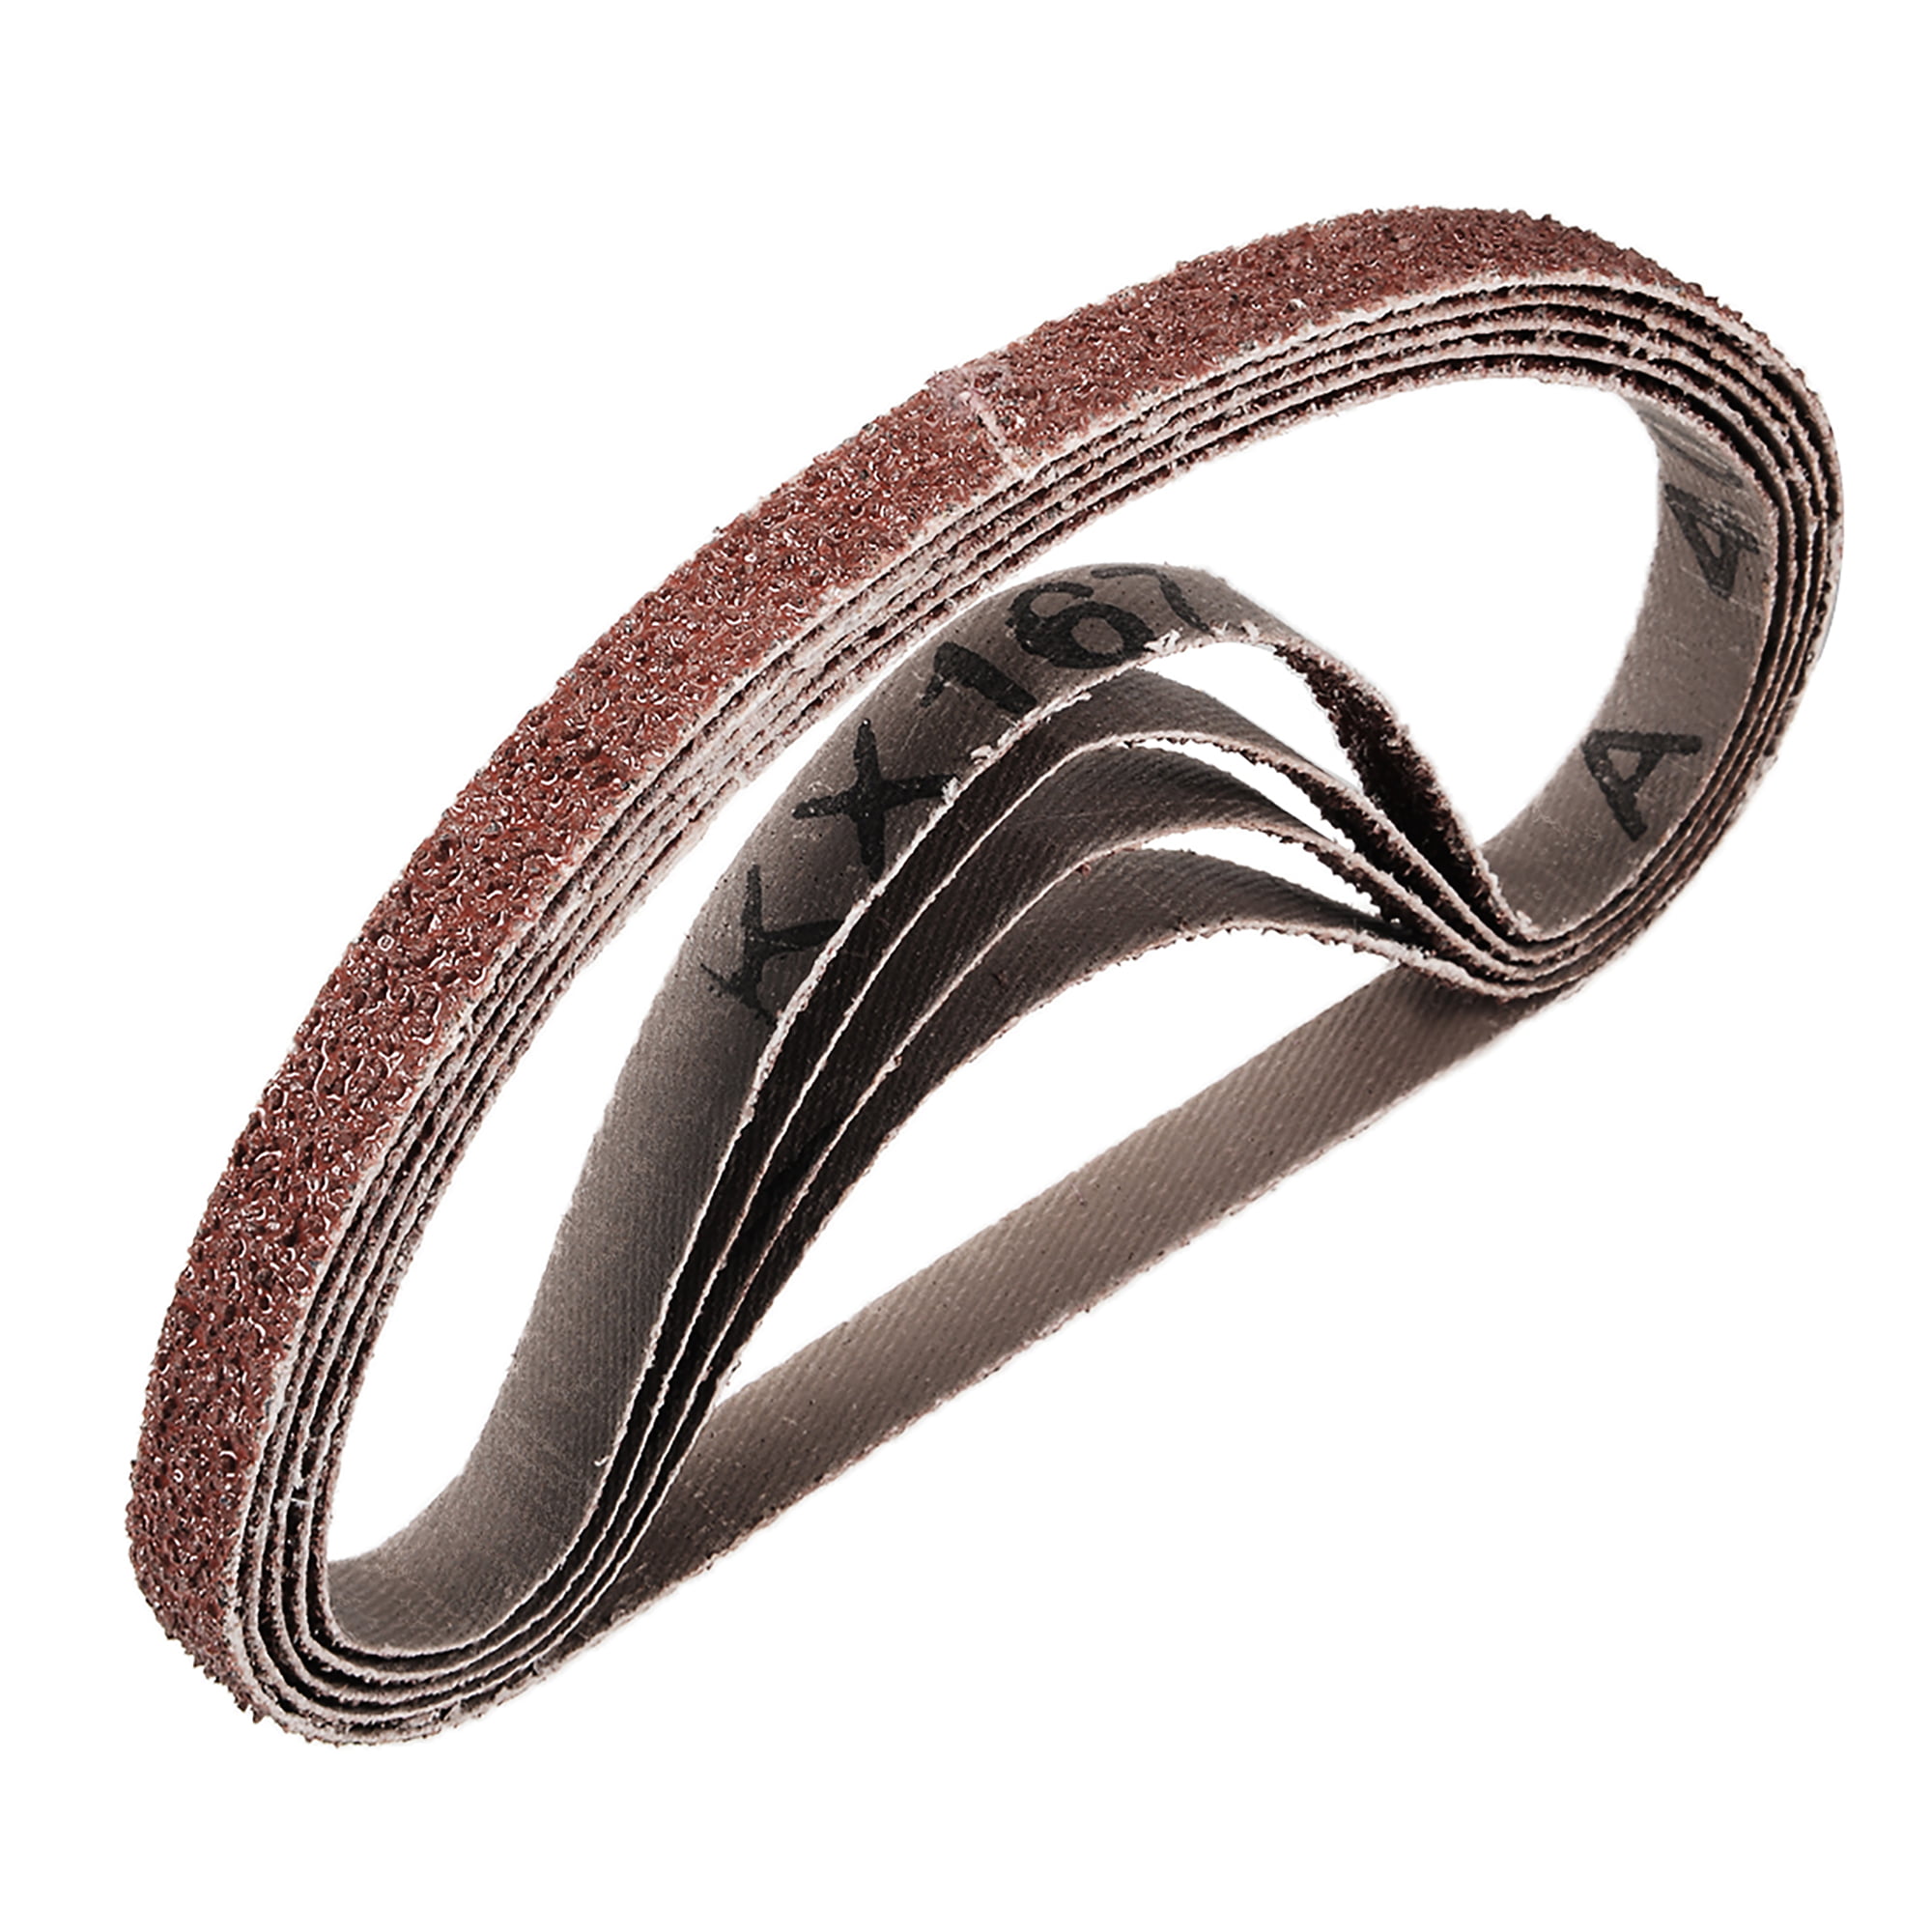 uxcell 1-inch x 21-inch 240-Grits Sanding Belt Aluminum Oxide Sand Belts for Belt Sander 5pcs 